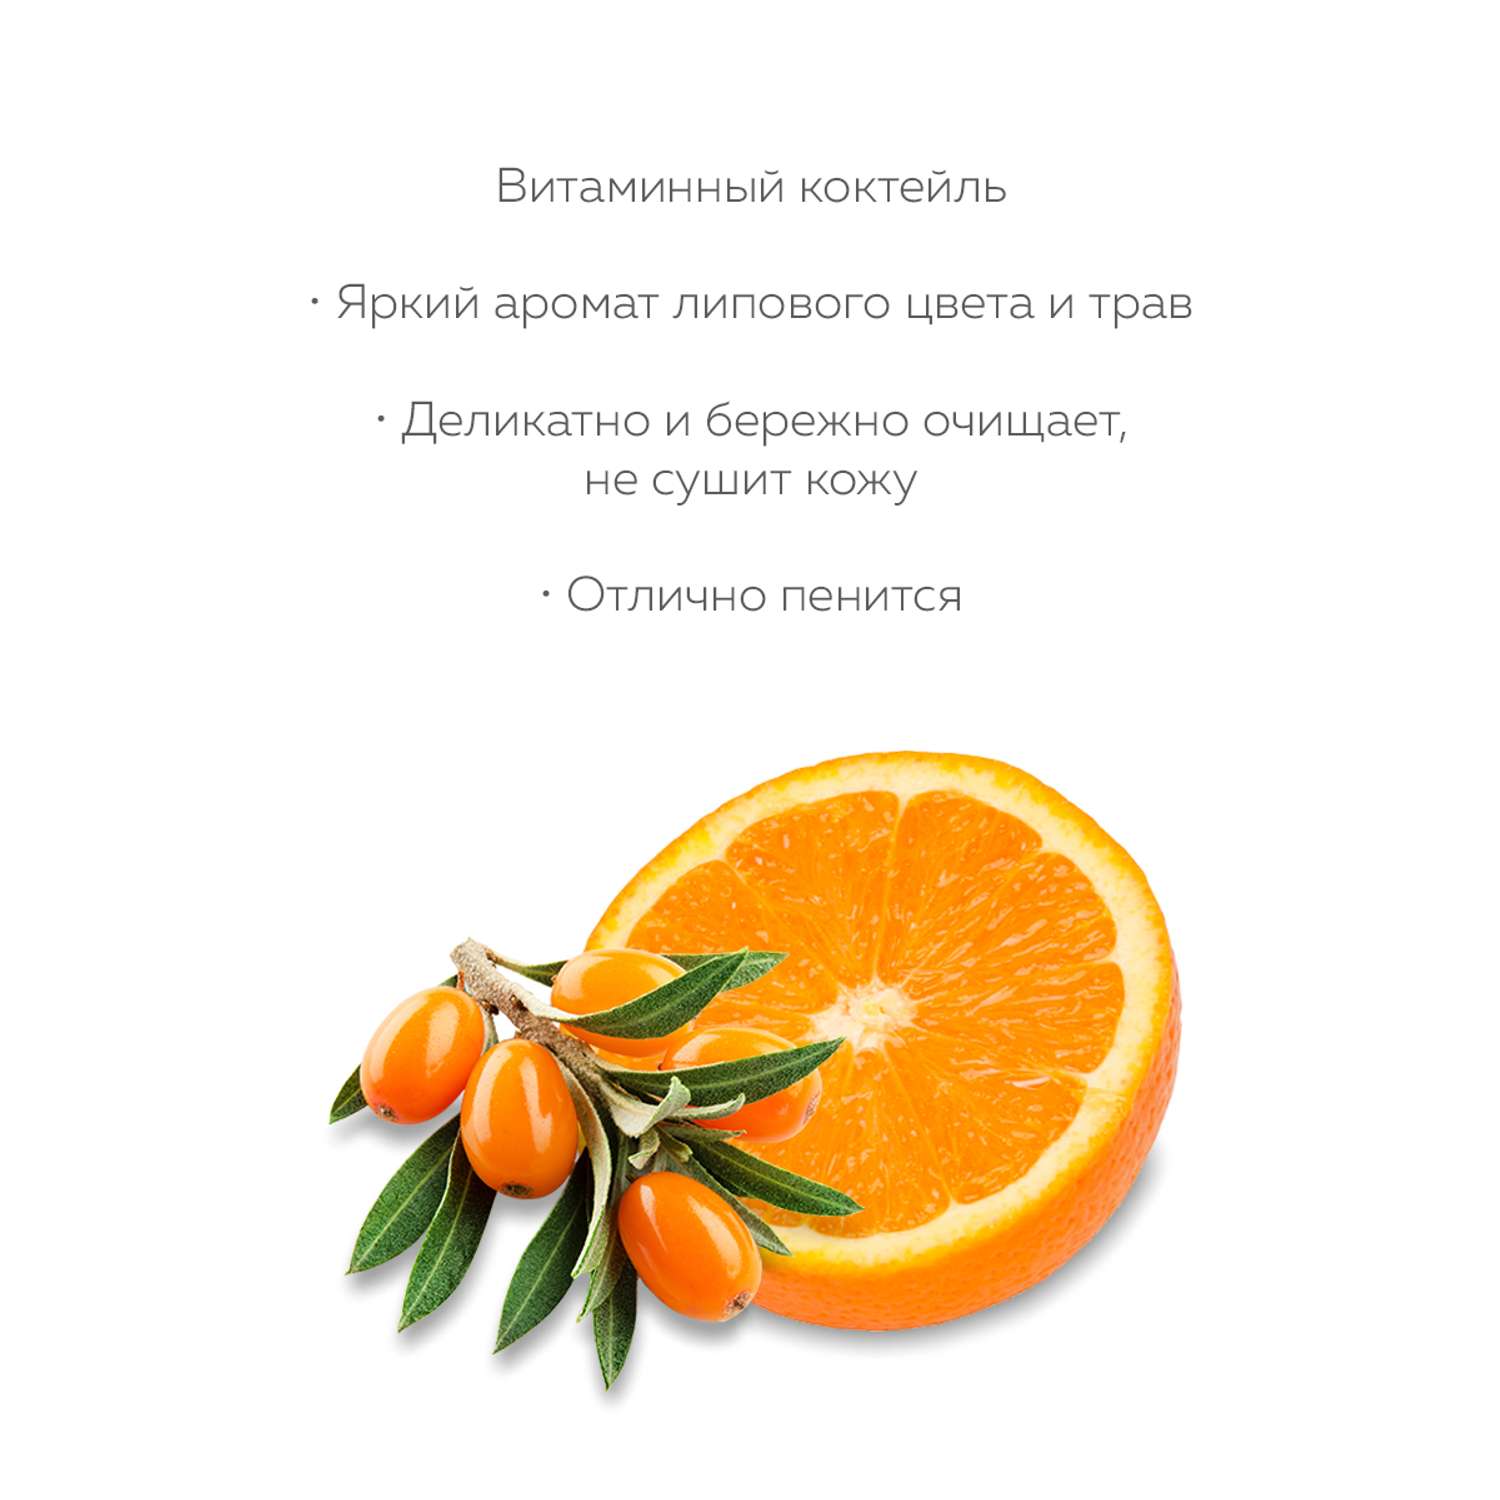 Гель для душа Marussia «Витаминный коктейль» с экстрактами облепихи и сладкого апельсина 400 мл - фото 3